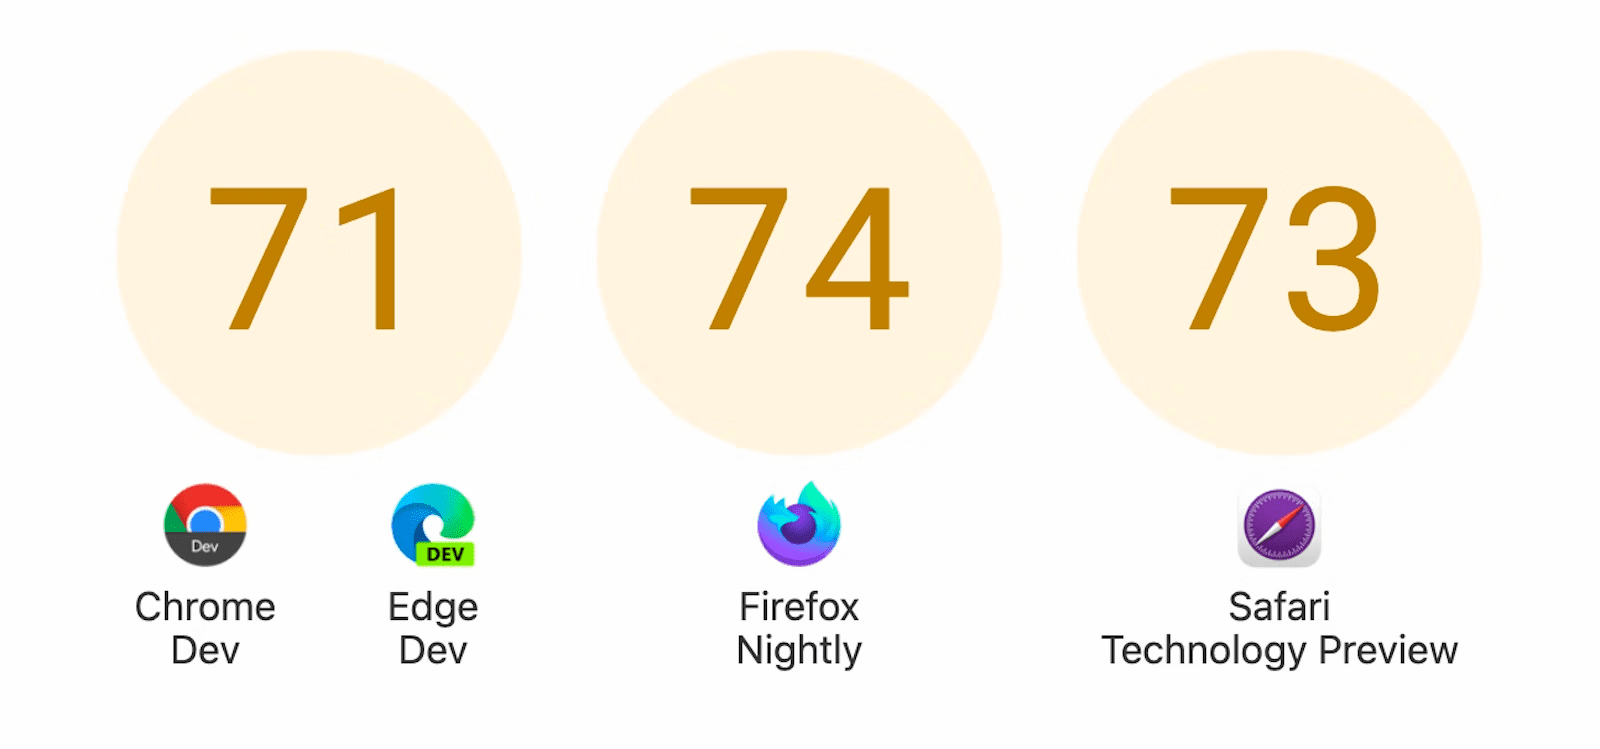 Trois cercles avec des scores: 71 pour Chrome Dev et Edge Dev, 74 pour Firefox Nightly et 73 pour Safari Technology Preview.